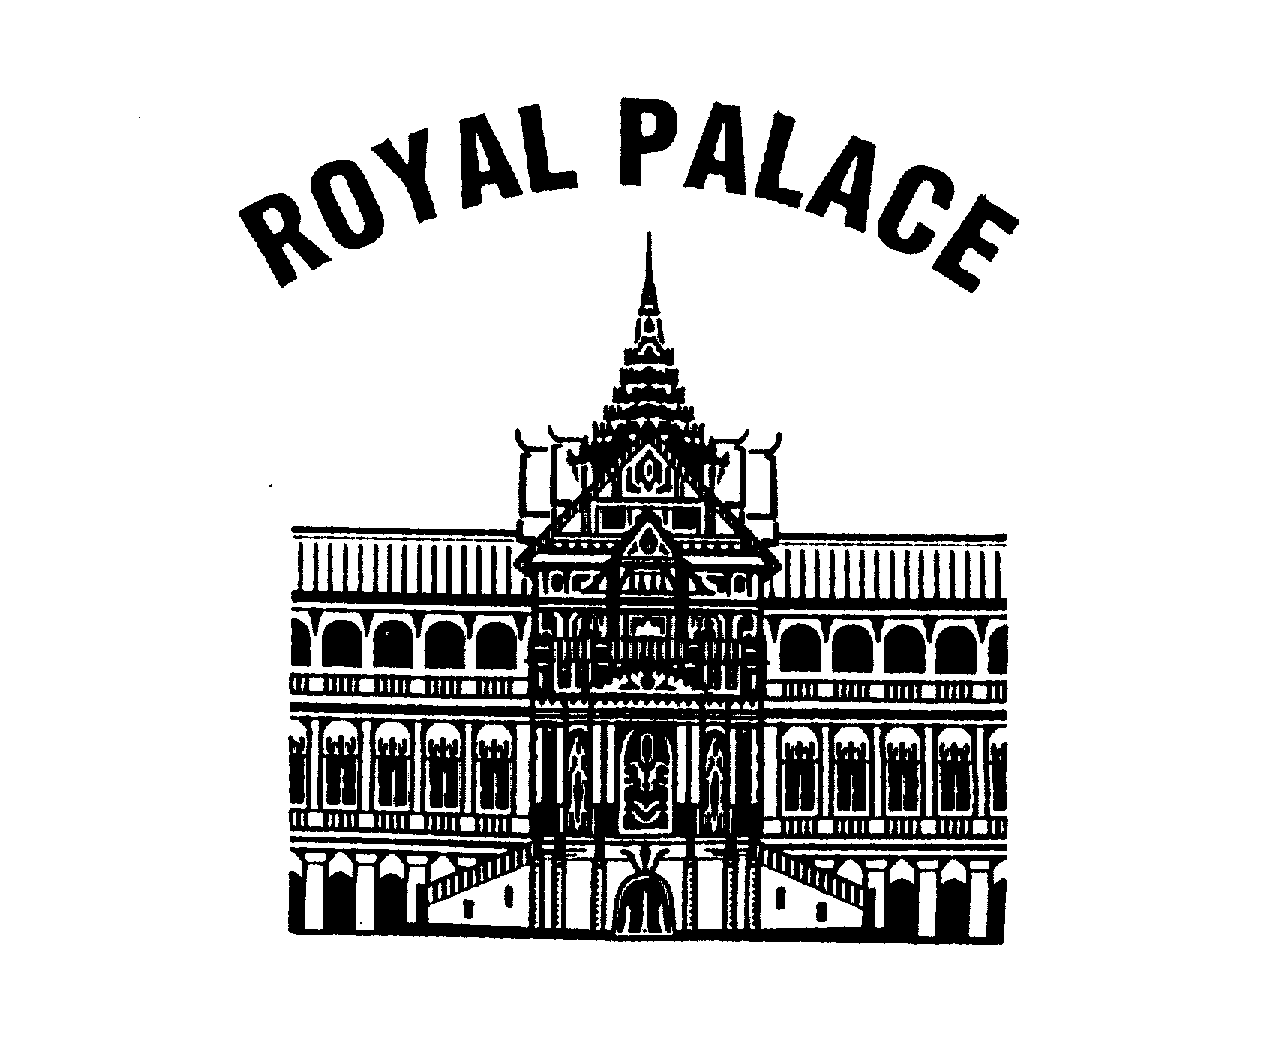 ROYAL PALACE